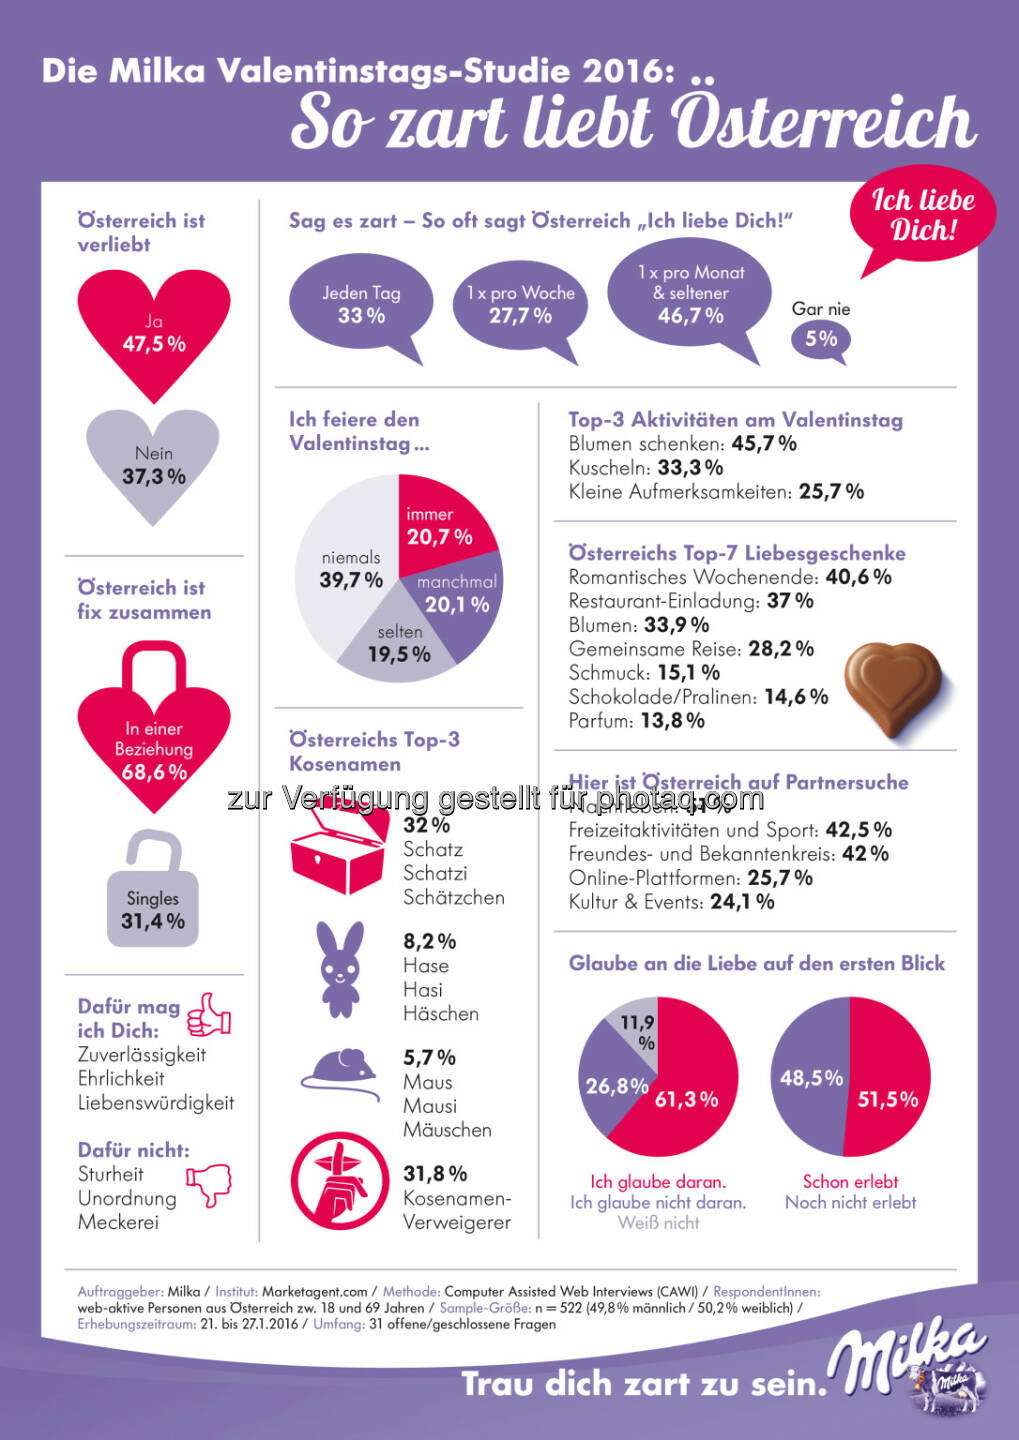 „I love Milka“ Valentinstag-Studie : Valentinstag: 61 Prozent glauben an die Liebe auf den ersten Blick : Fotocredit: Milka / Mondelez International